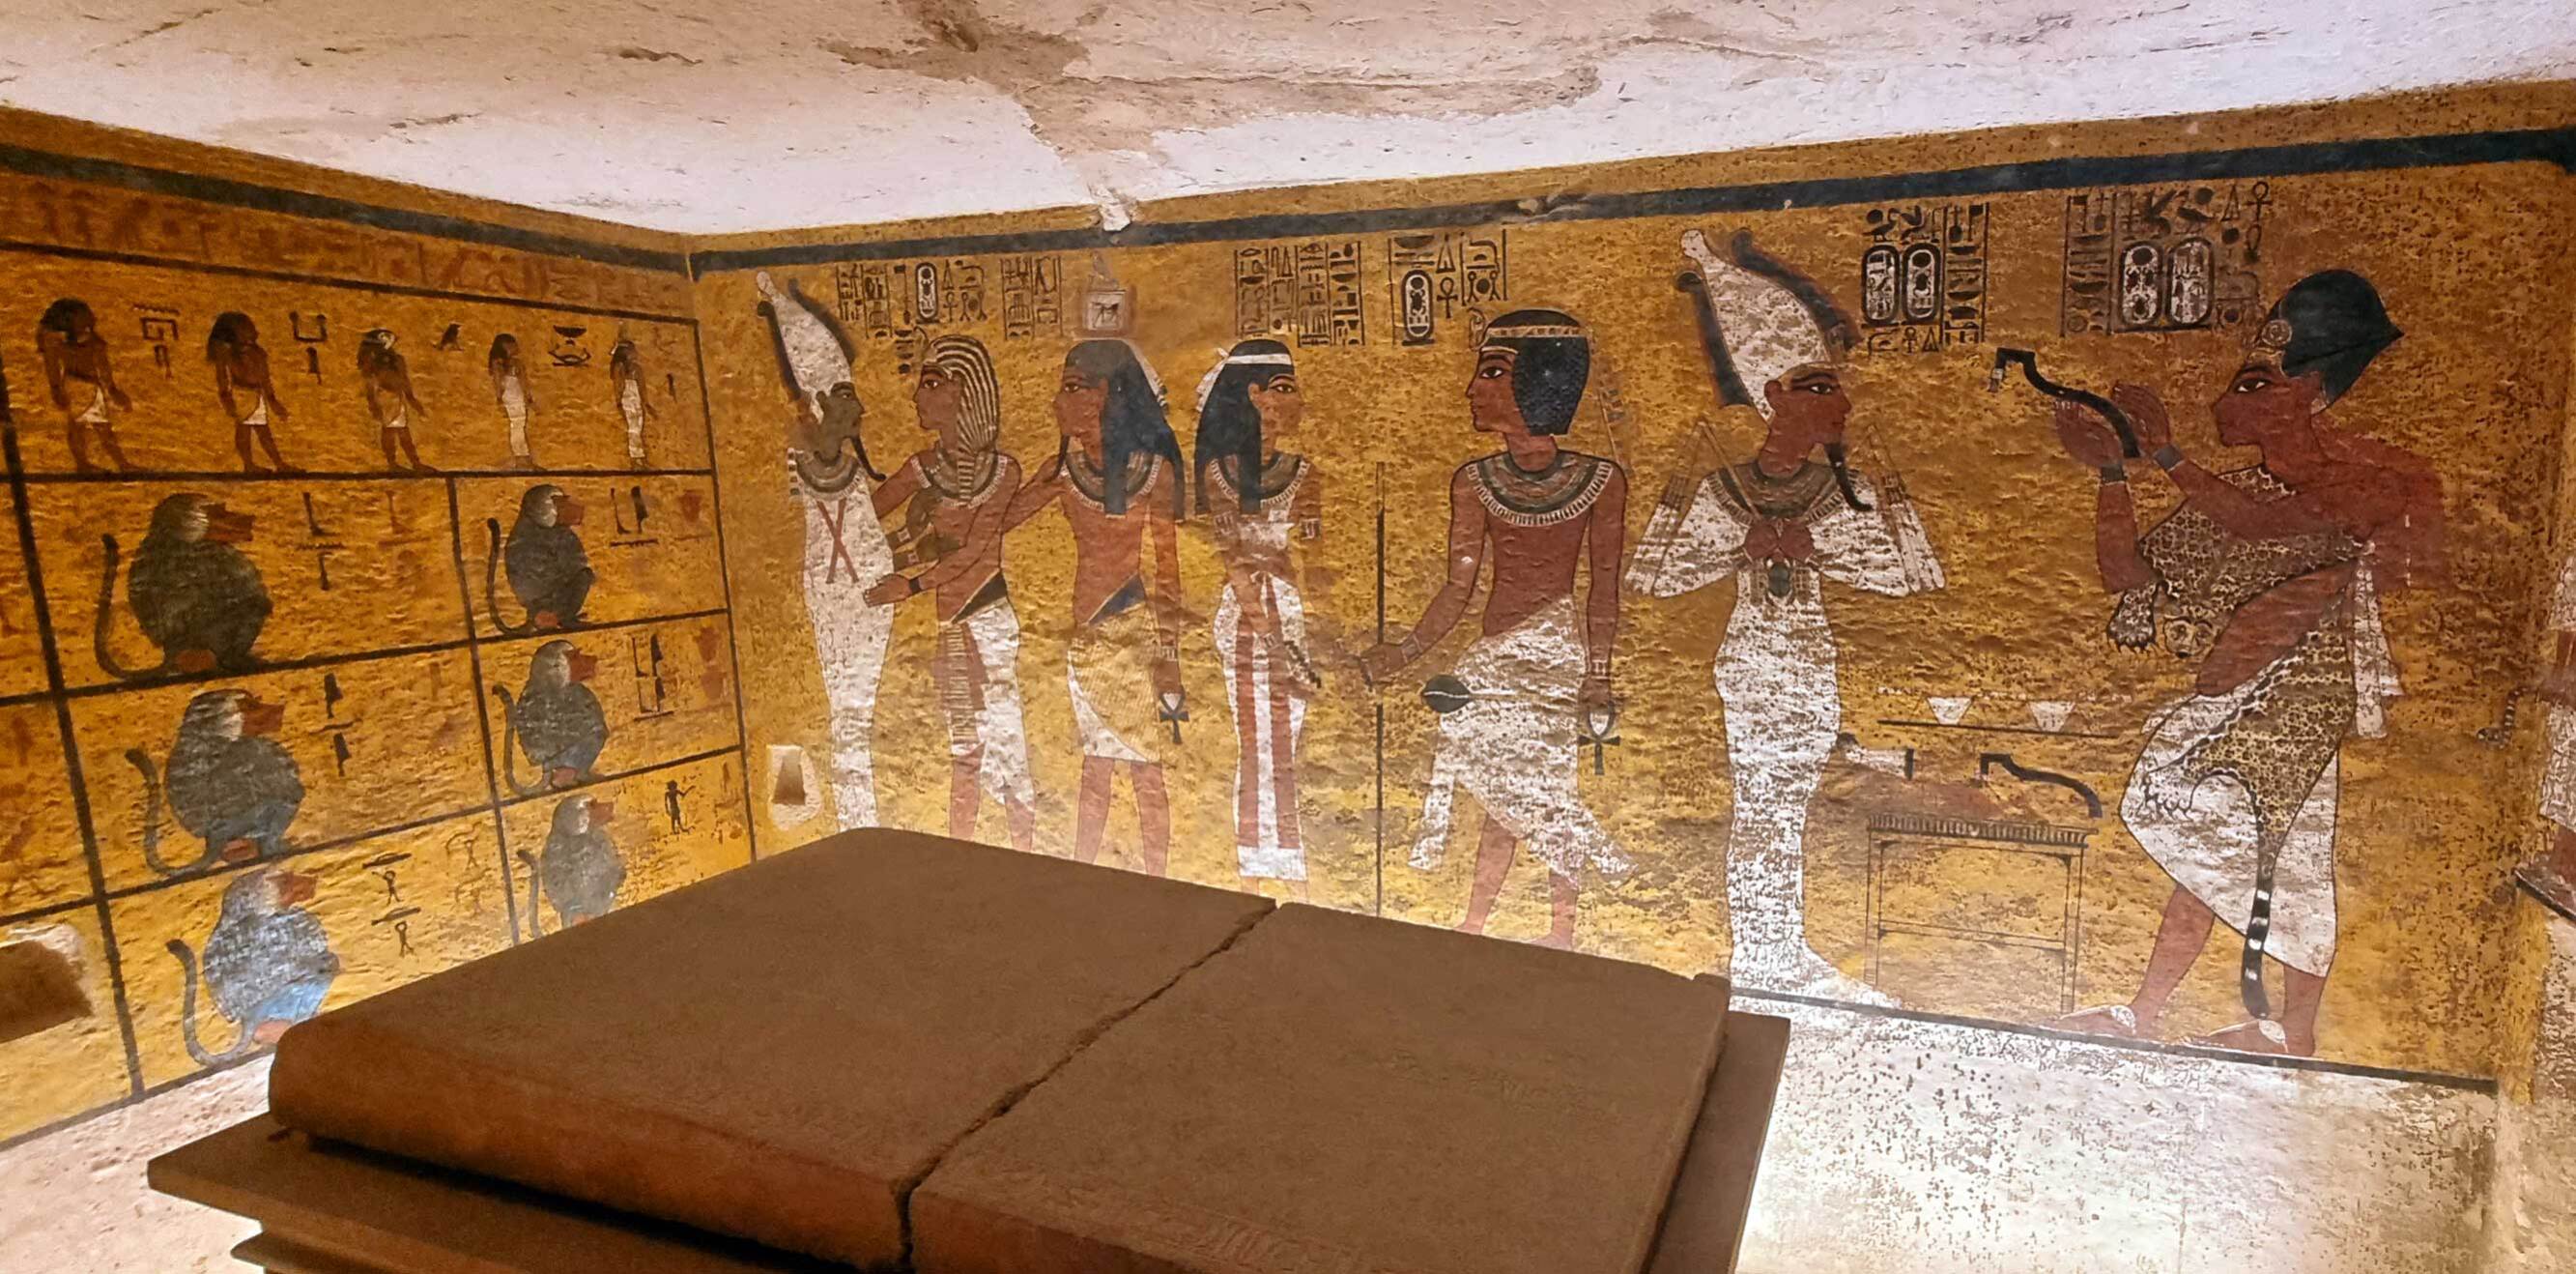 En 1922, Howard Carter descubrió la tumba intacta de Tutankamon. Hoy los enigmas sobre ese hallazgo siguen alentando mil historias.